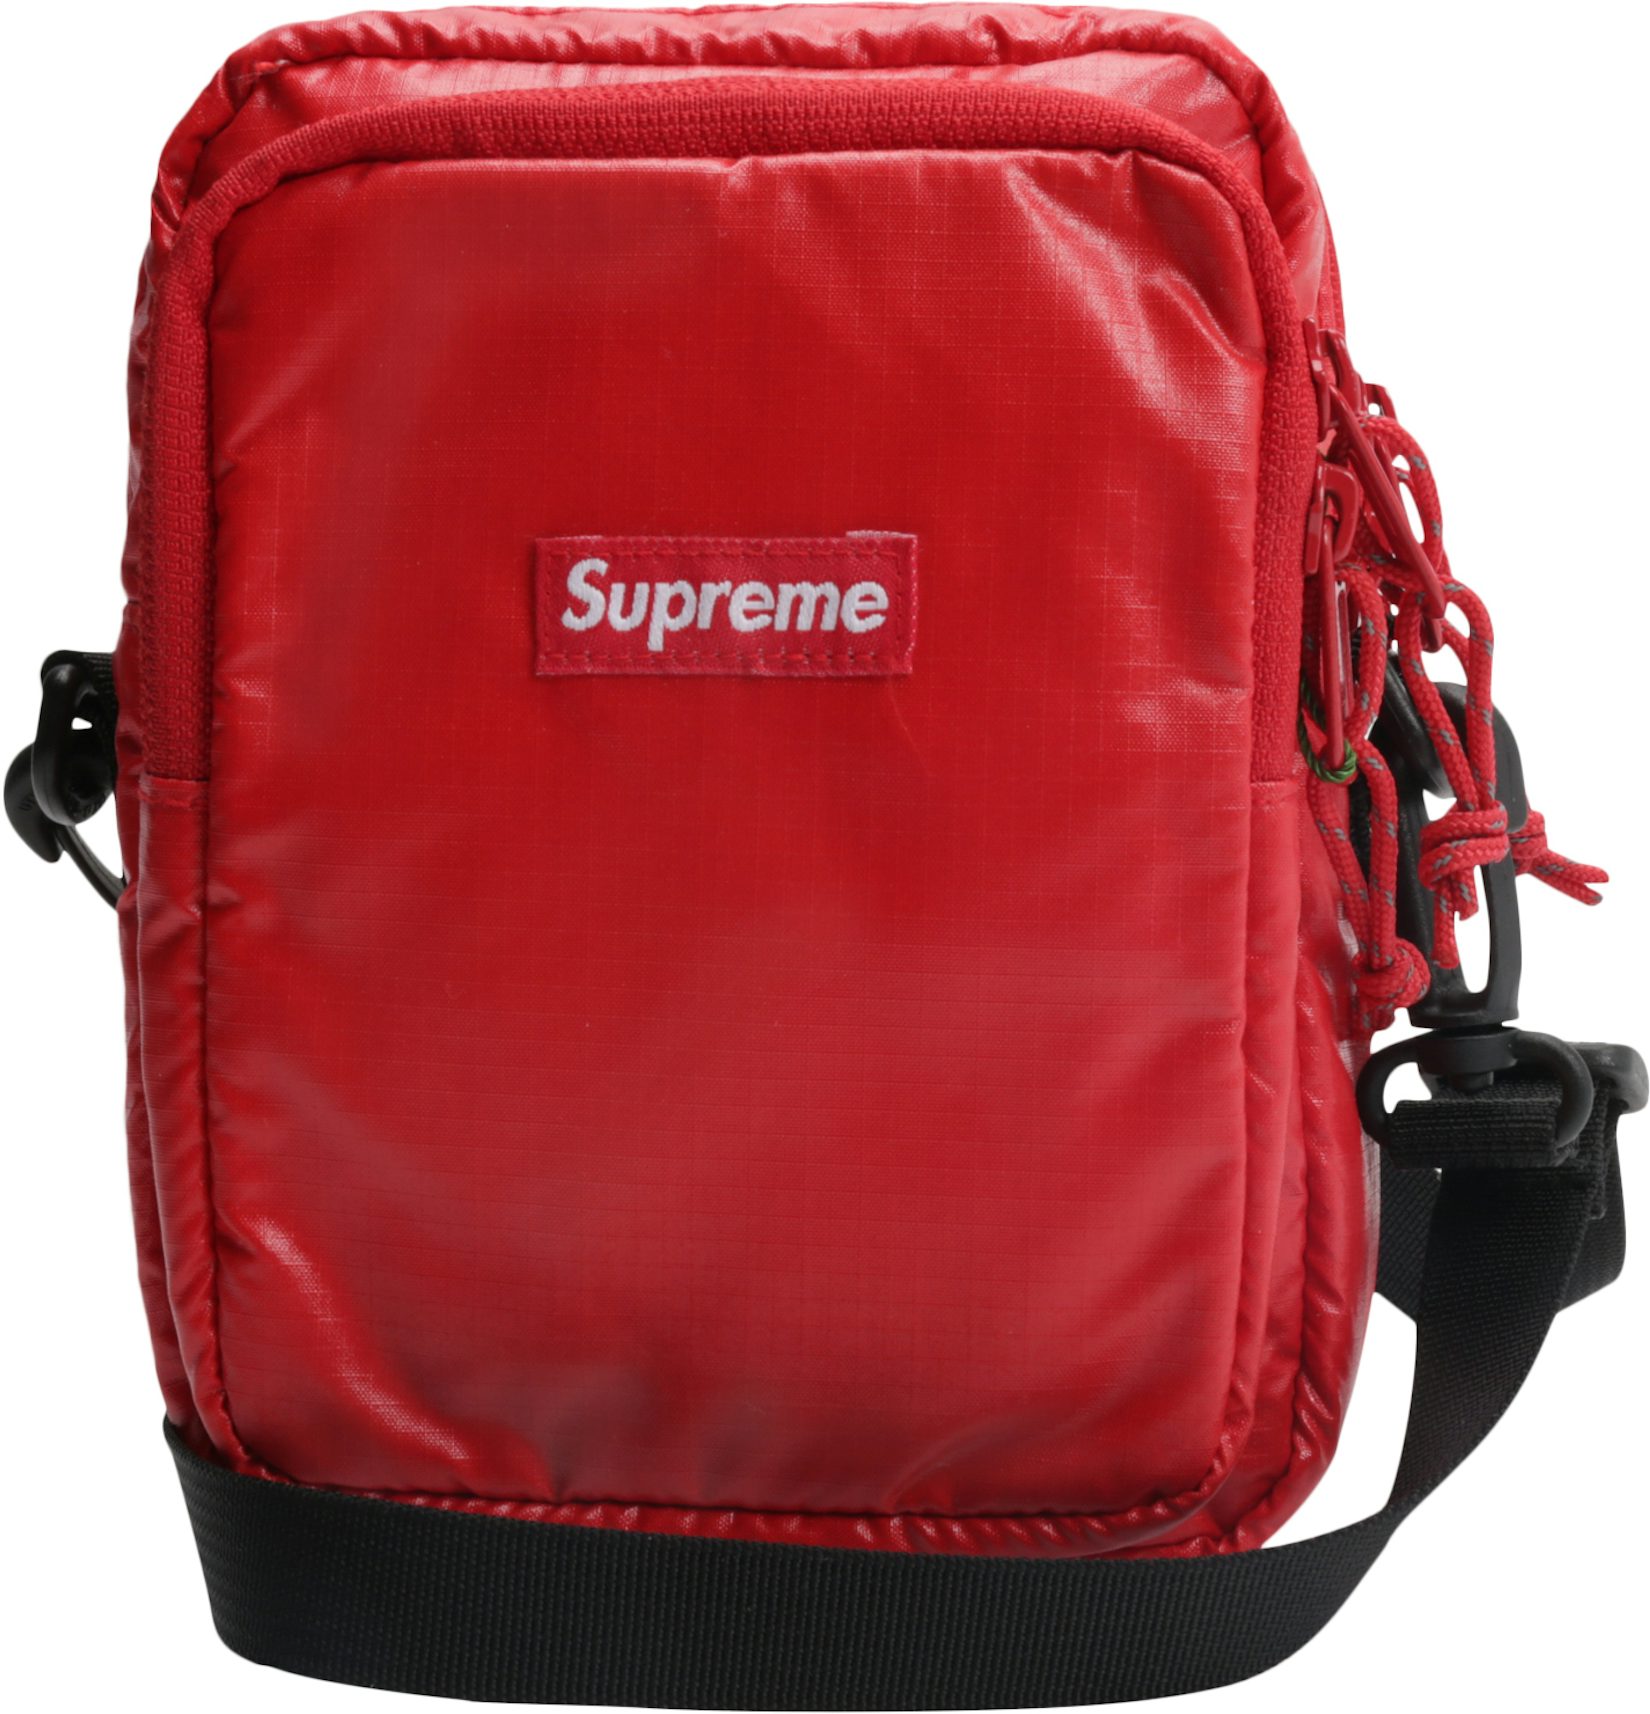 Supreme Shoulder Bag FW 18 Red - Stadium Goods